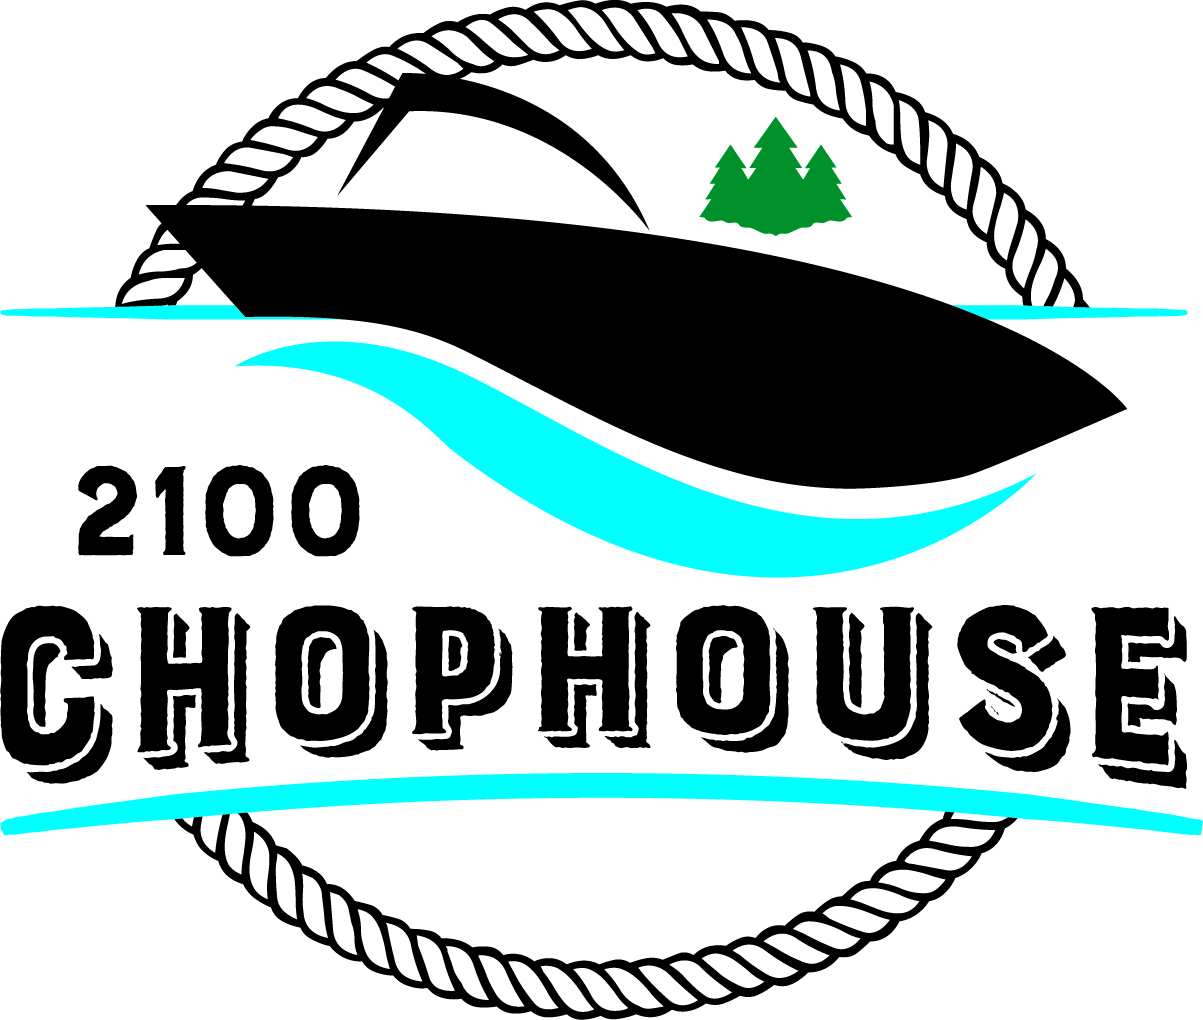 2100 Chophouse Logo 3 color